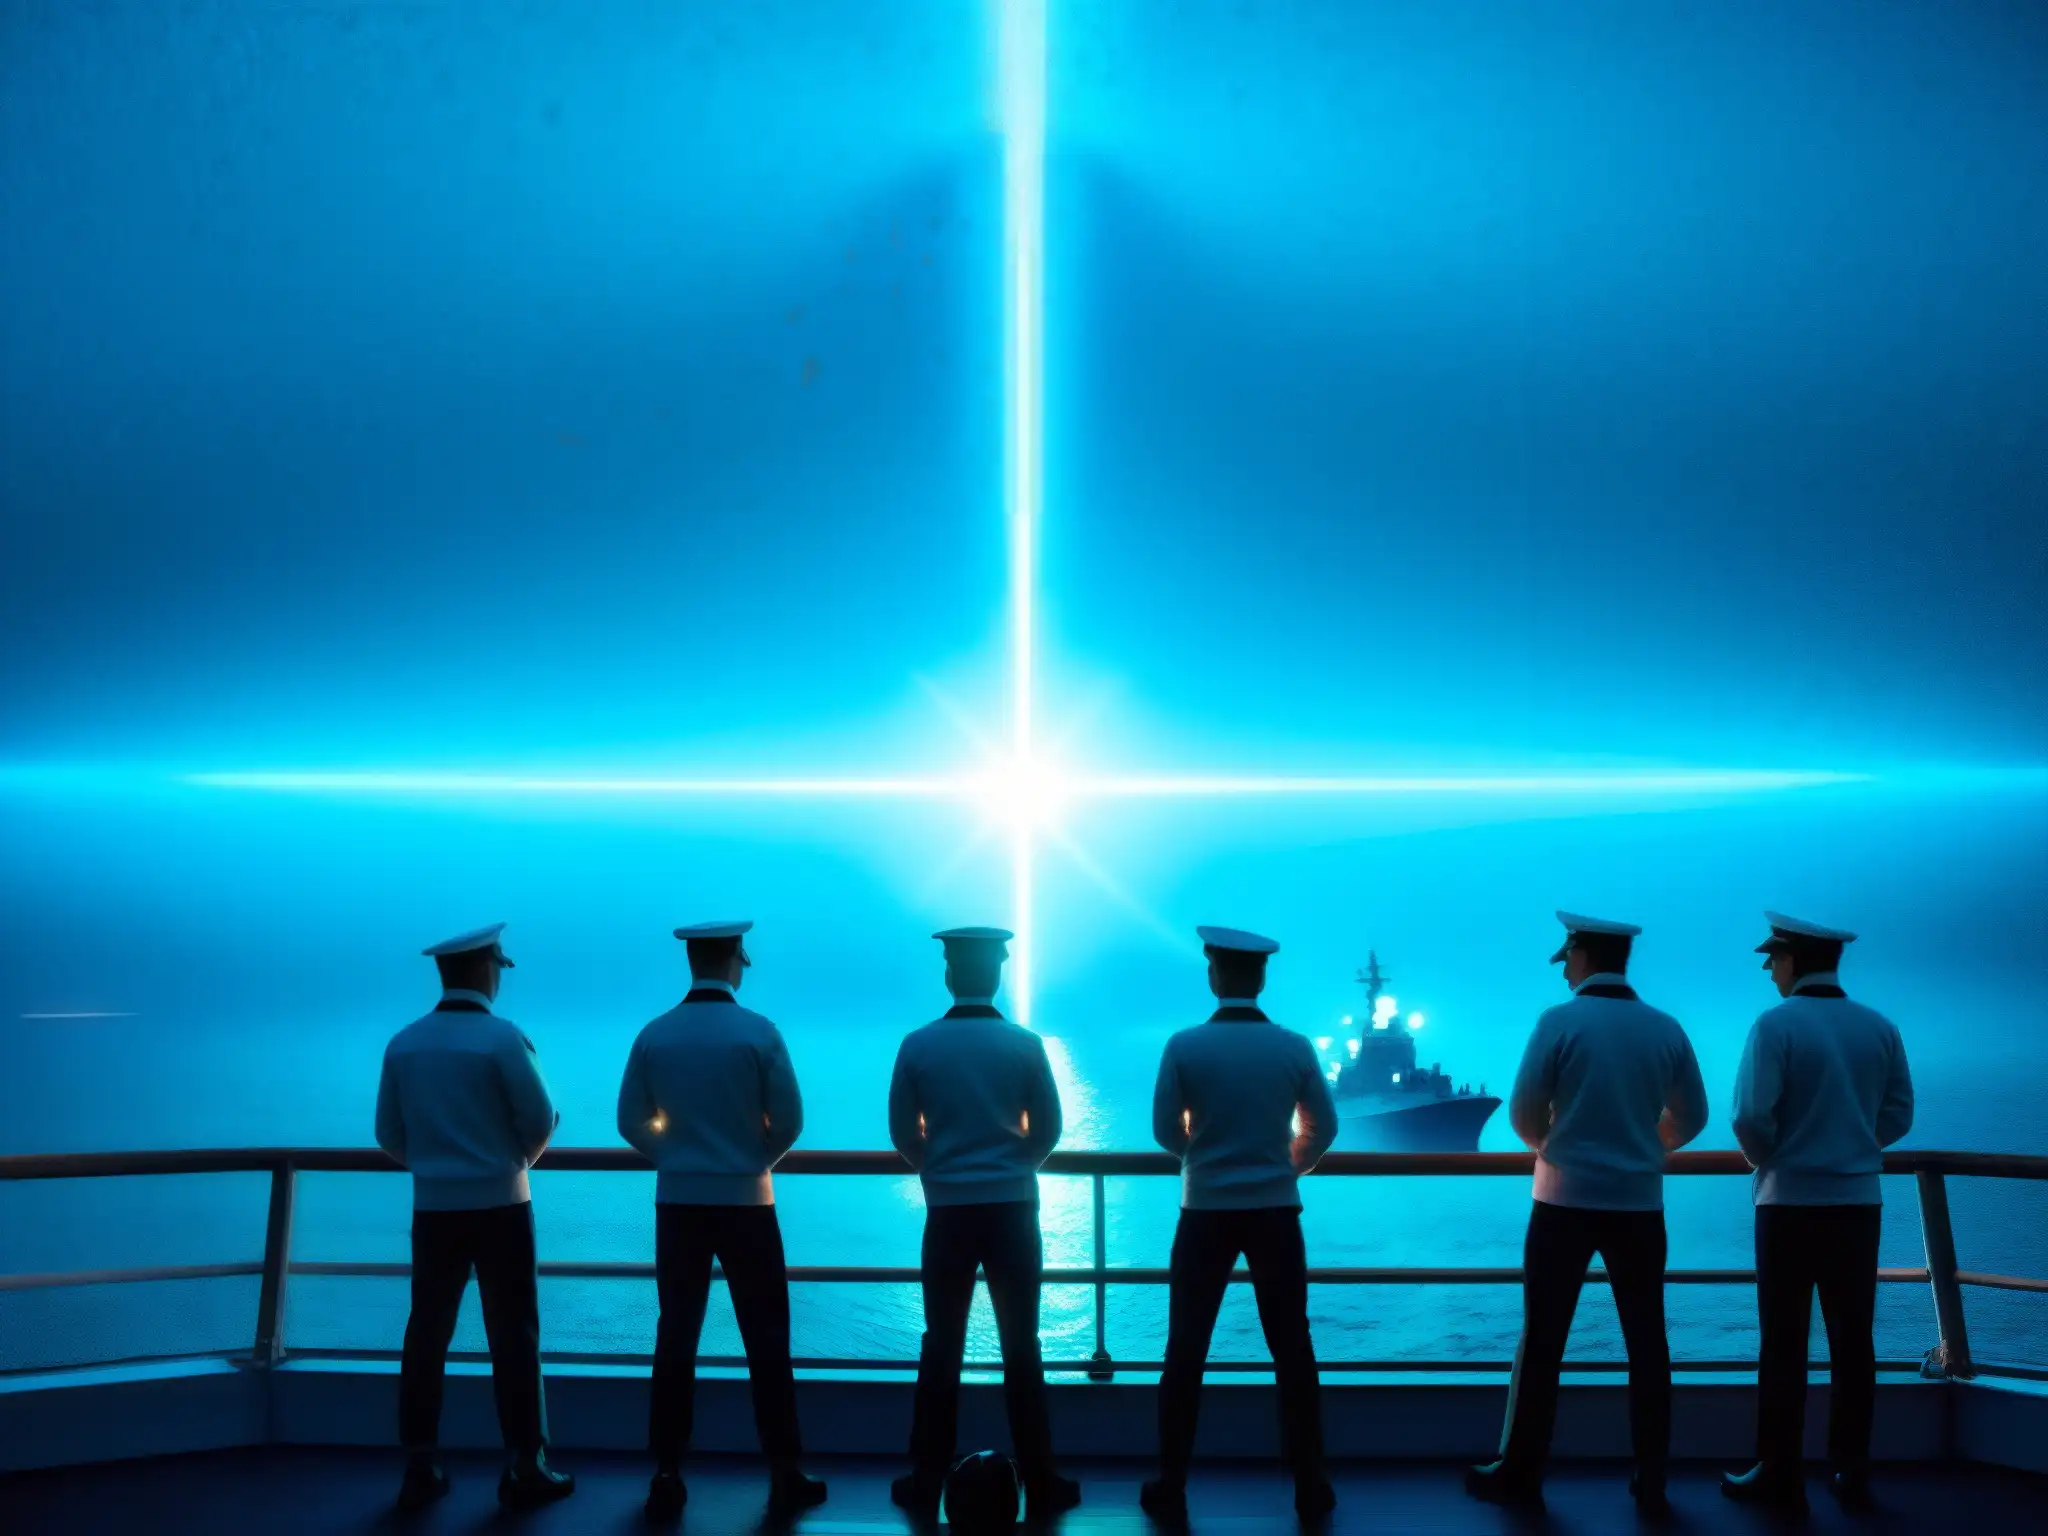 Grupo de marineros en un barco de guerra con un efecto distorsionado, sugiriendo experimento Filadelfia teletransportación naval